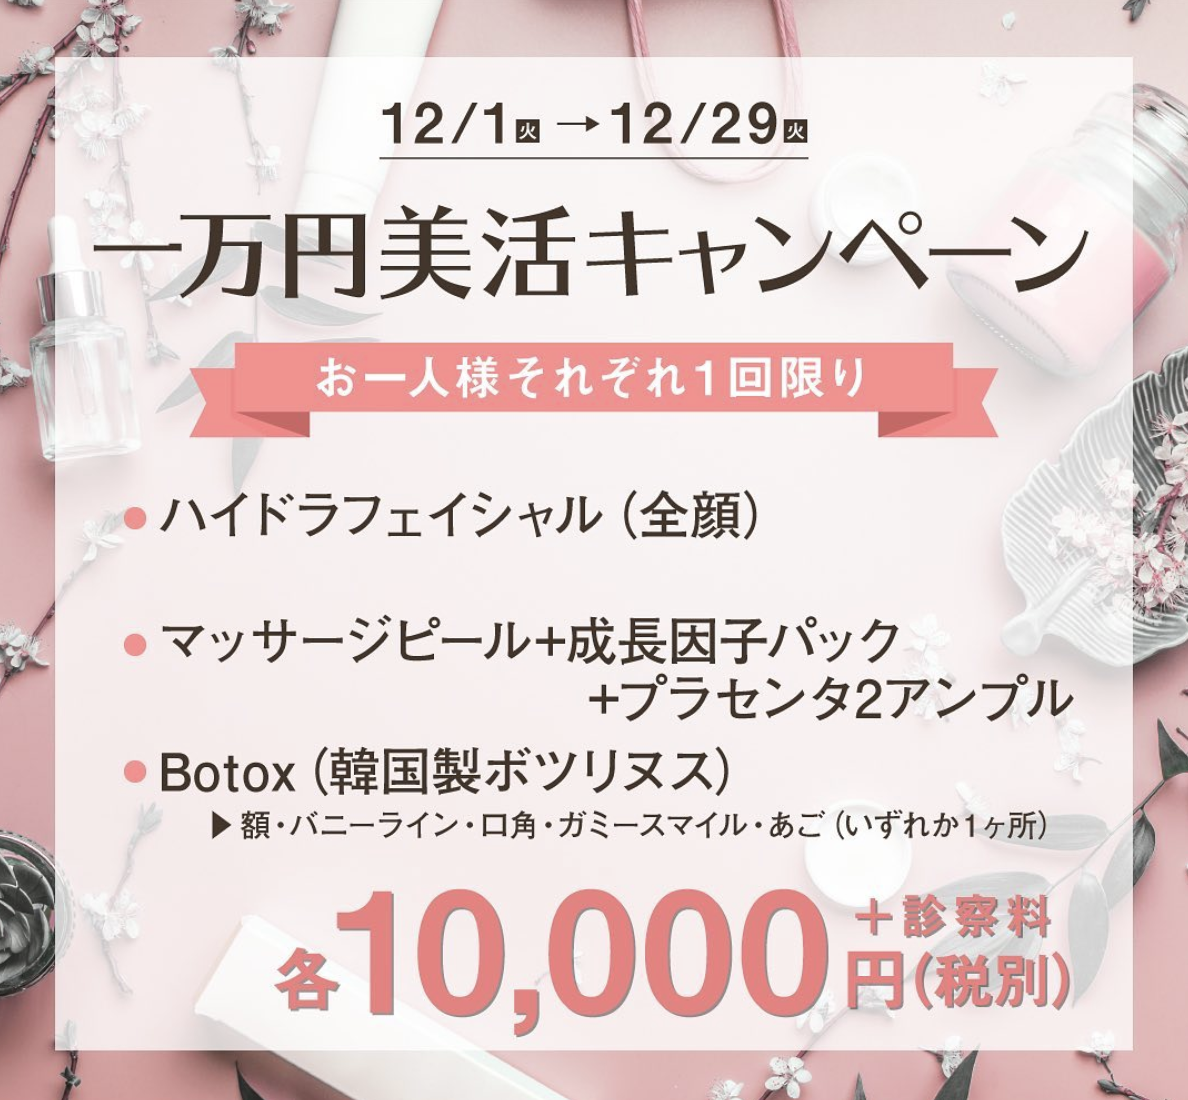 〝明日はもっと綺麗になれる〟東京美容クリニック 青山本院、1万円で叶う美活キャンペーン開始！